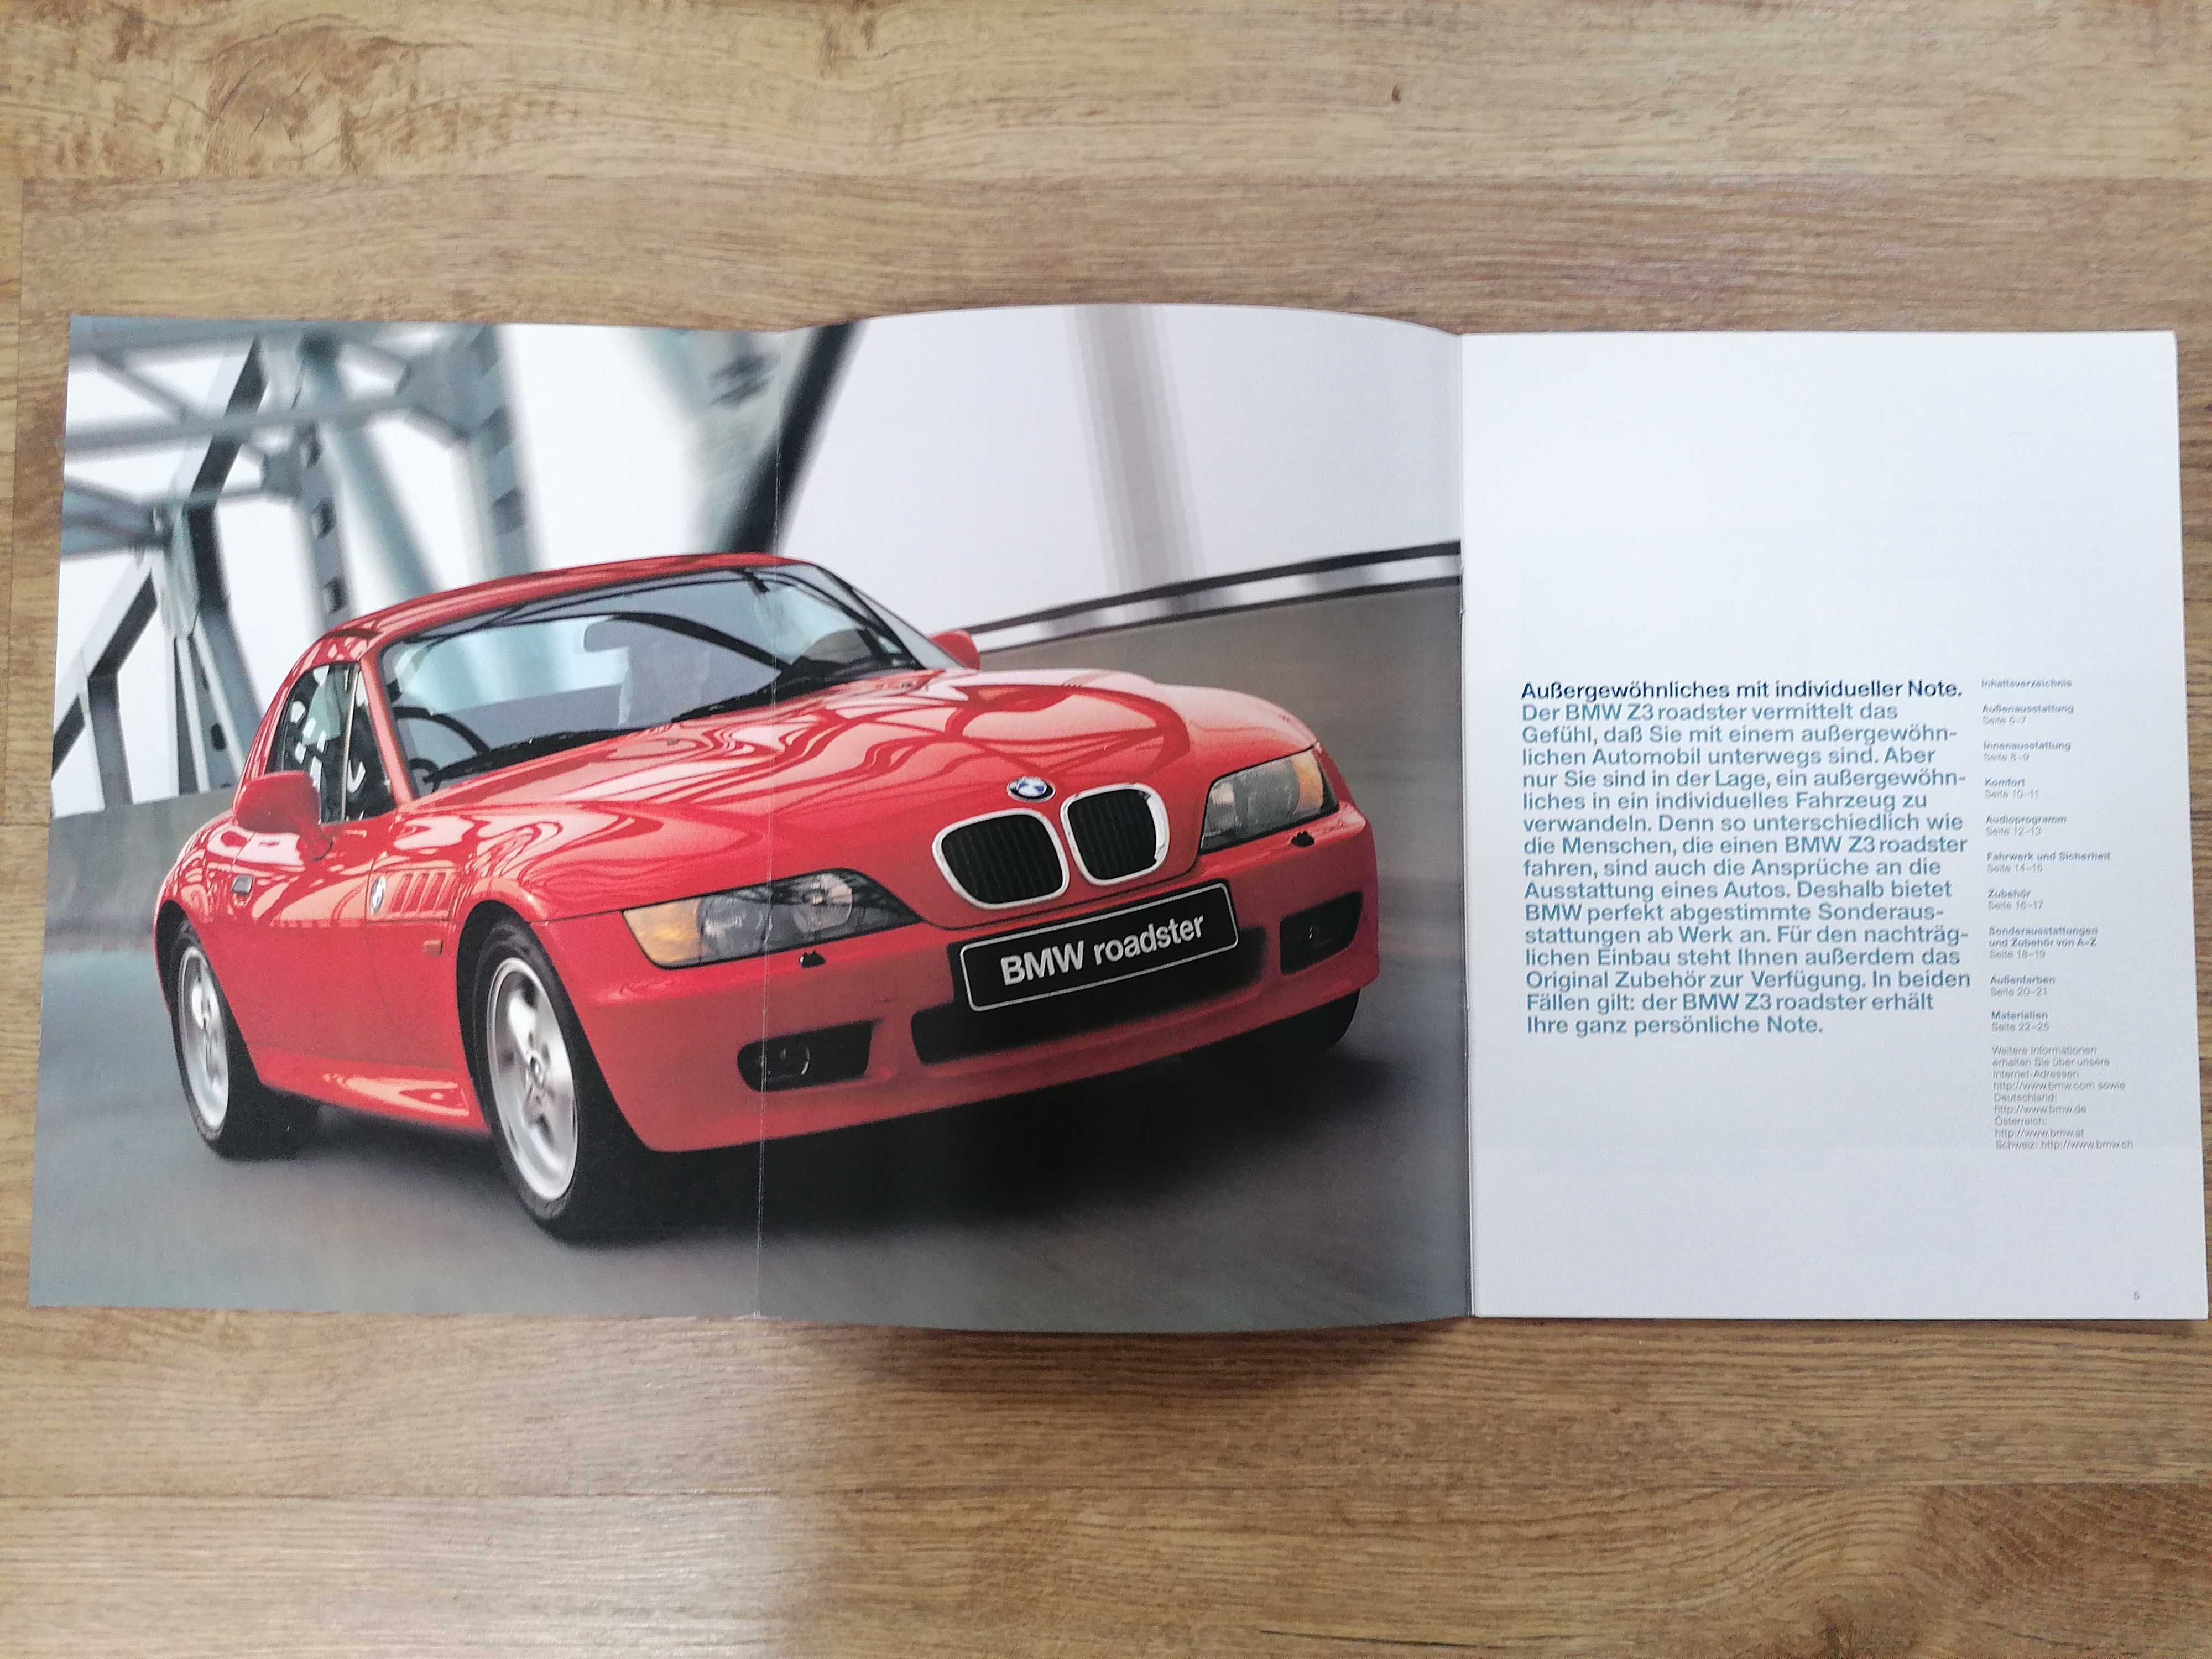 Prospekt BMW Z3 wyposażenie dodatkowe i paleta kolorów.